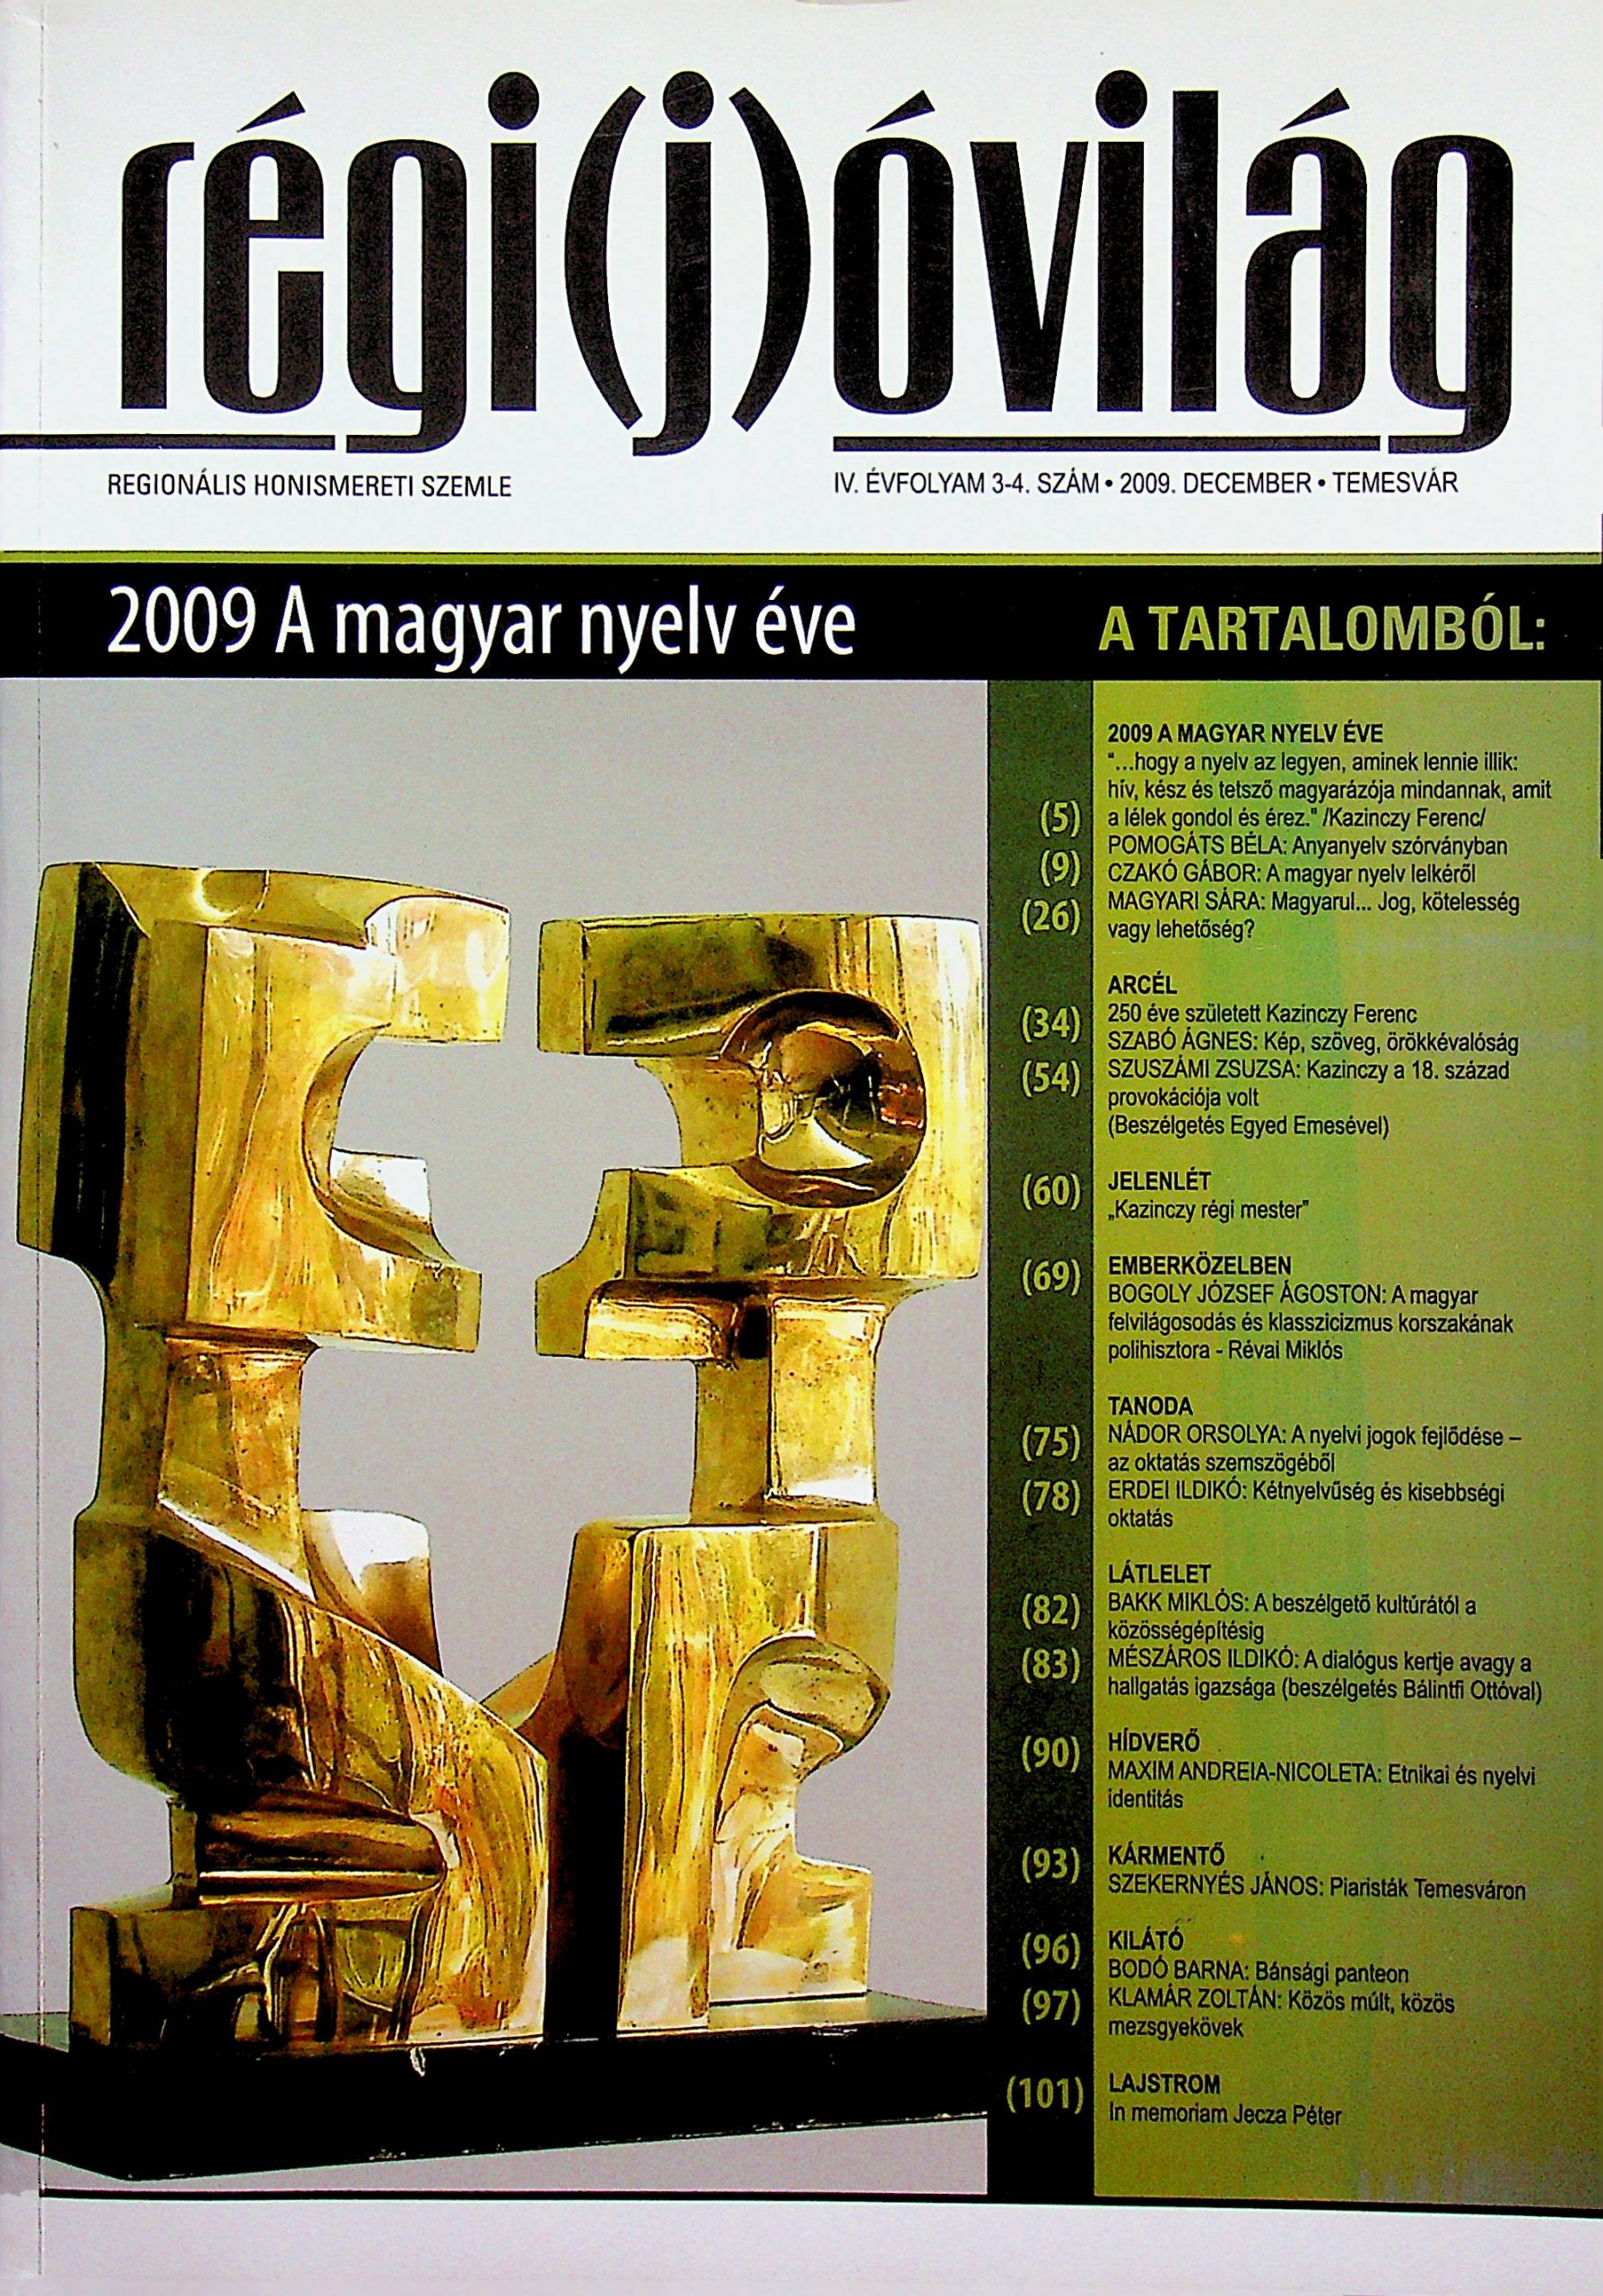 2009 A magyar nyelv éve – Régi(j)óvilág - Temesváros